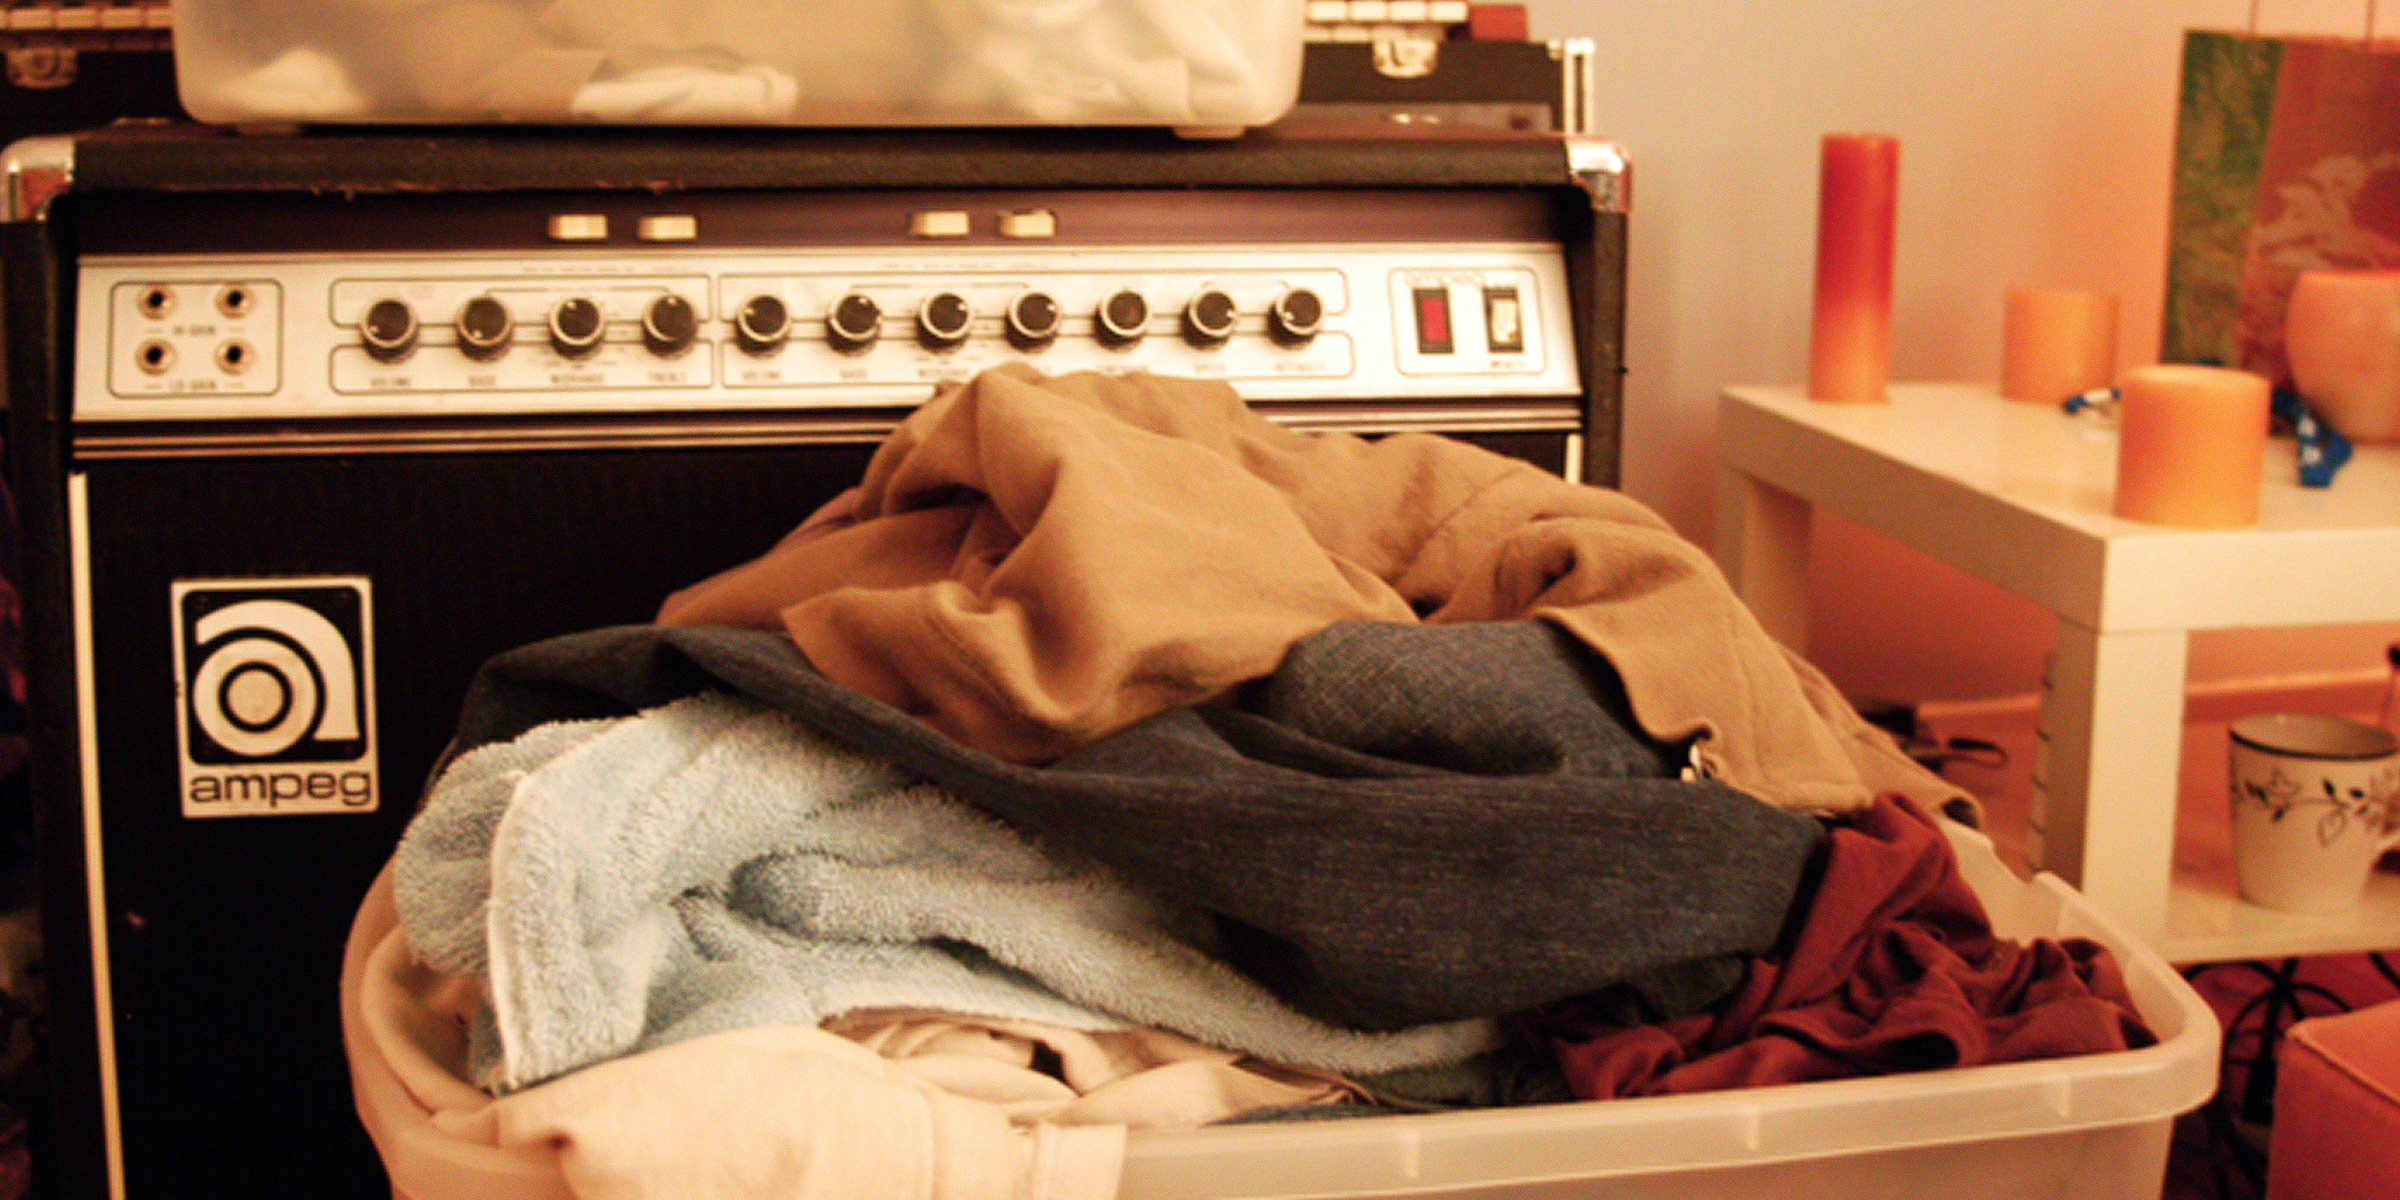 Ein Wäschekorb | Quelle: Flickr